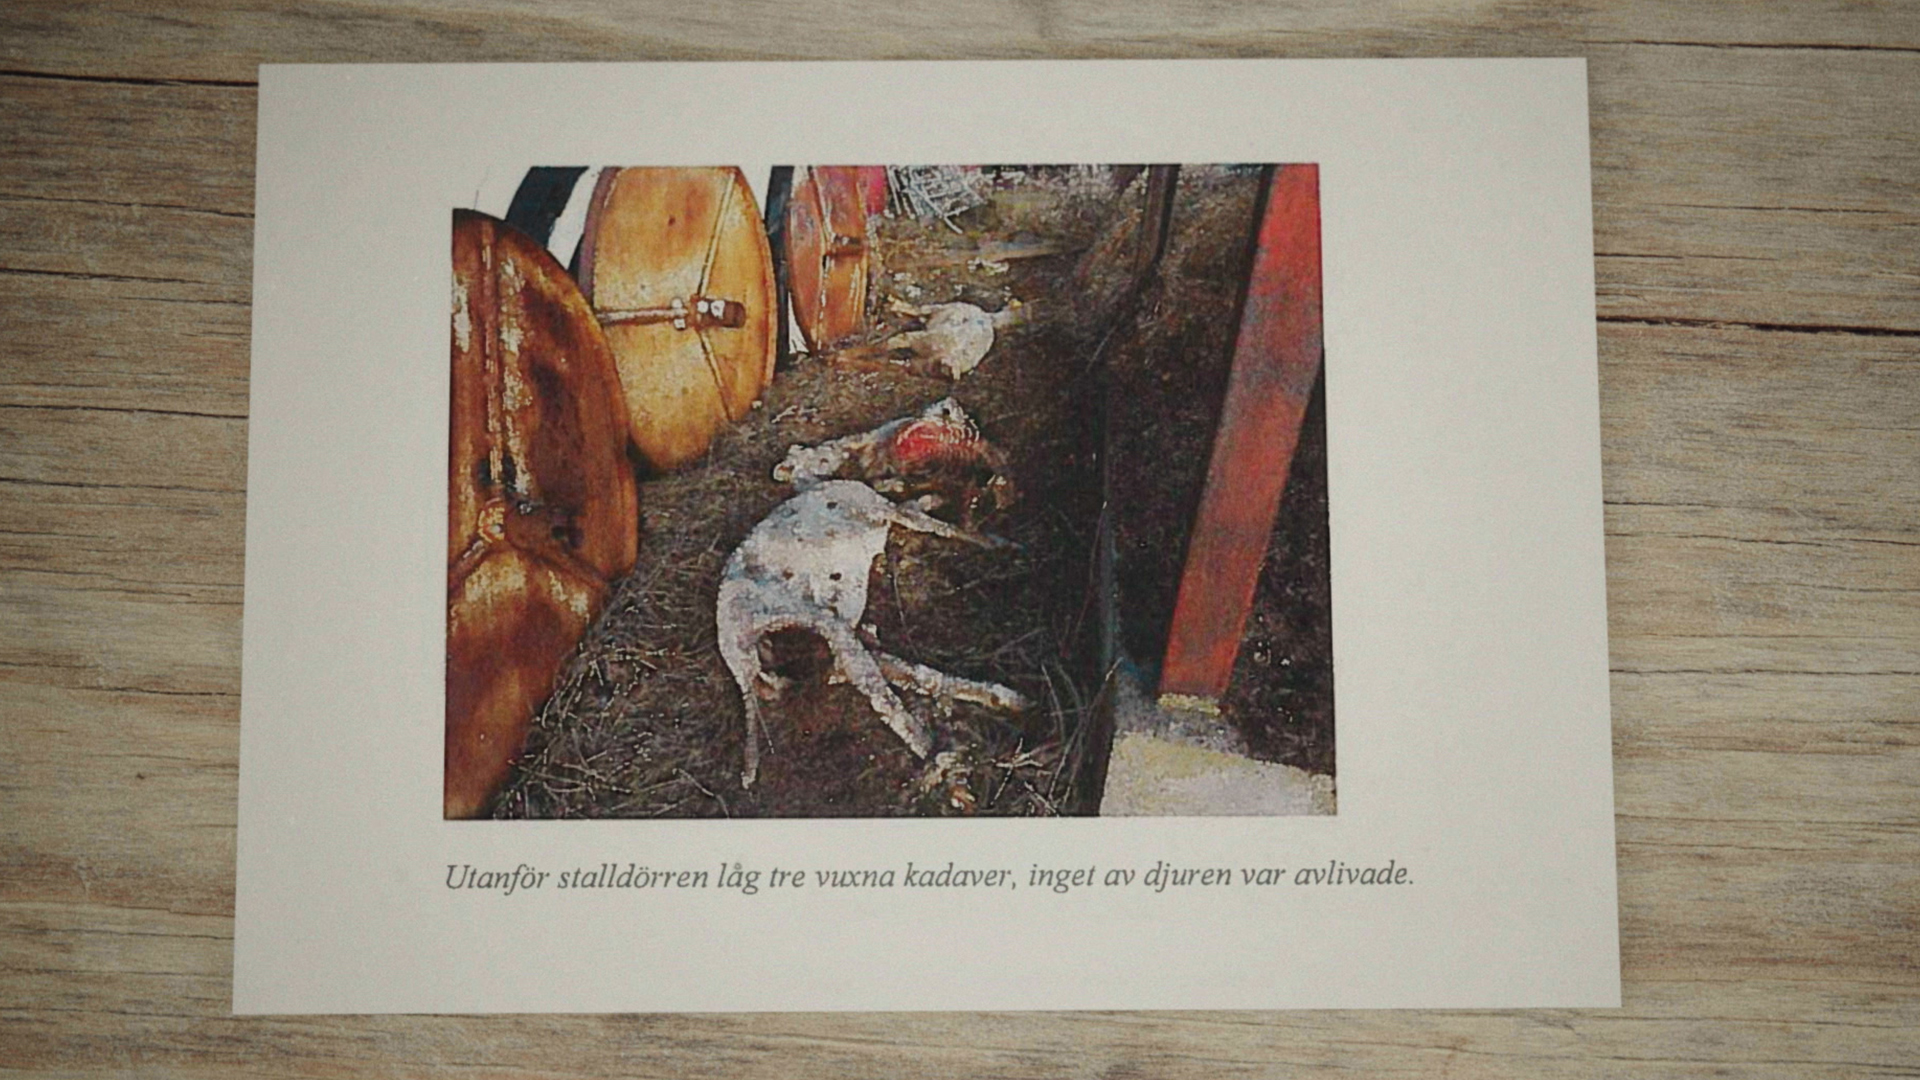  Uppdrag granskning har besökt Kravgårdarna som brutit mot djurskyddslagen. Foto: SVT 